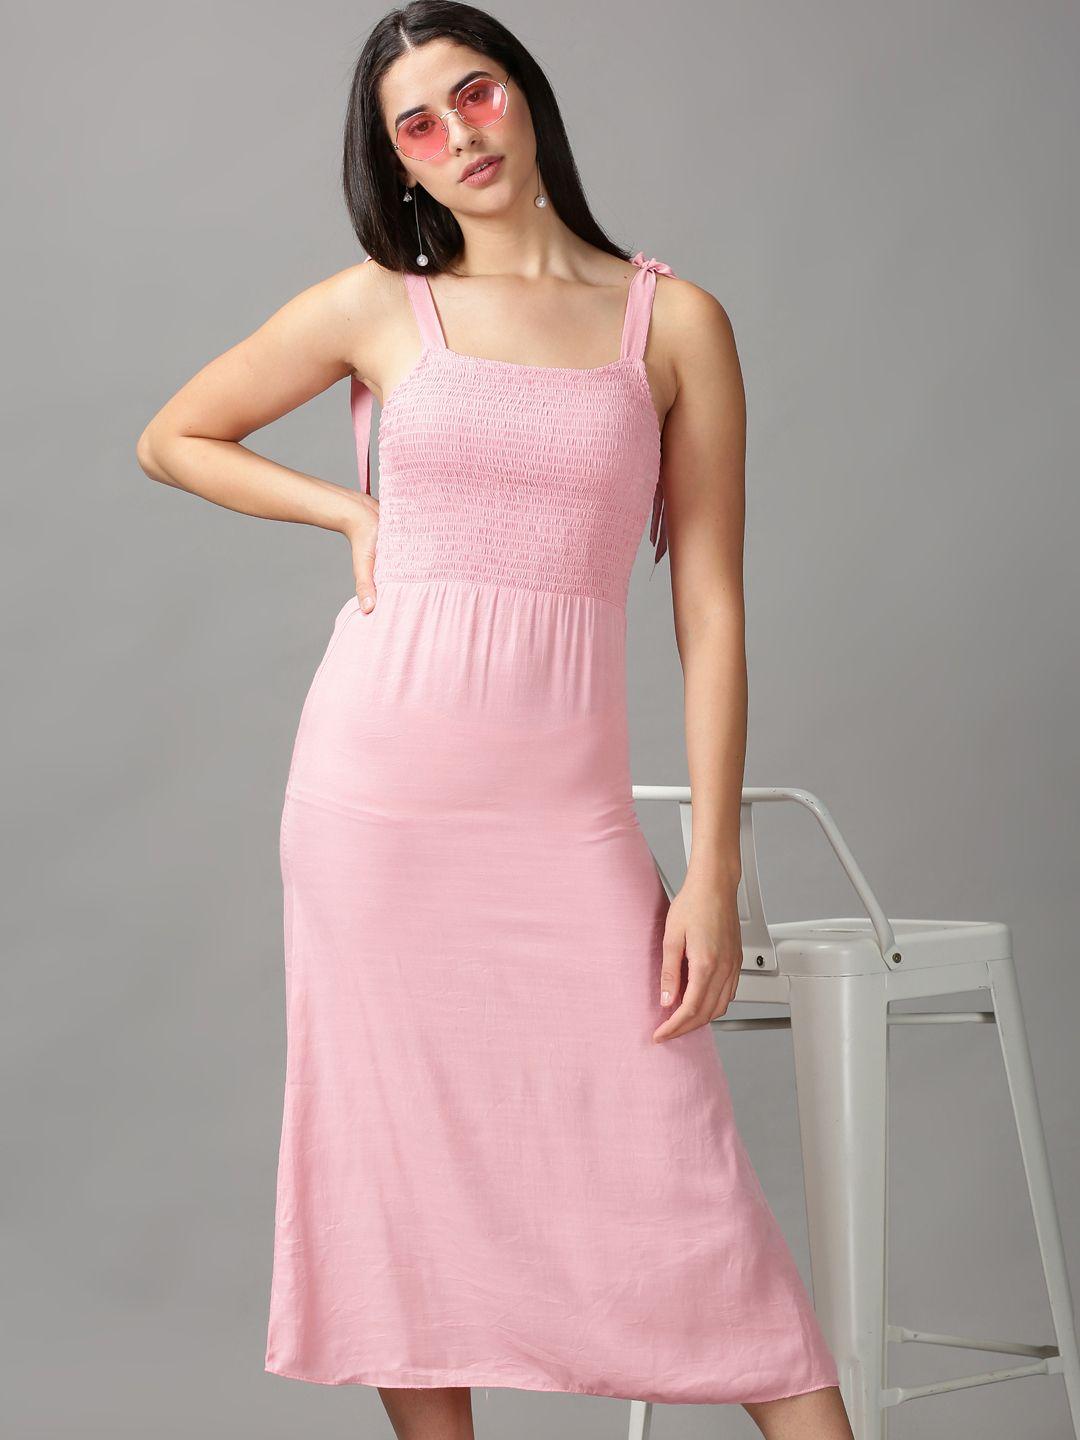 showoff-pink-a-line-midi-dress